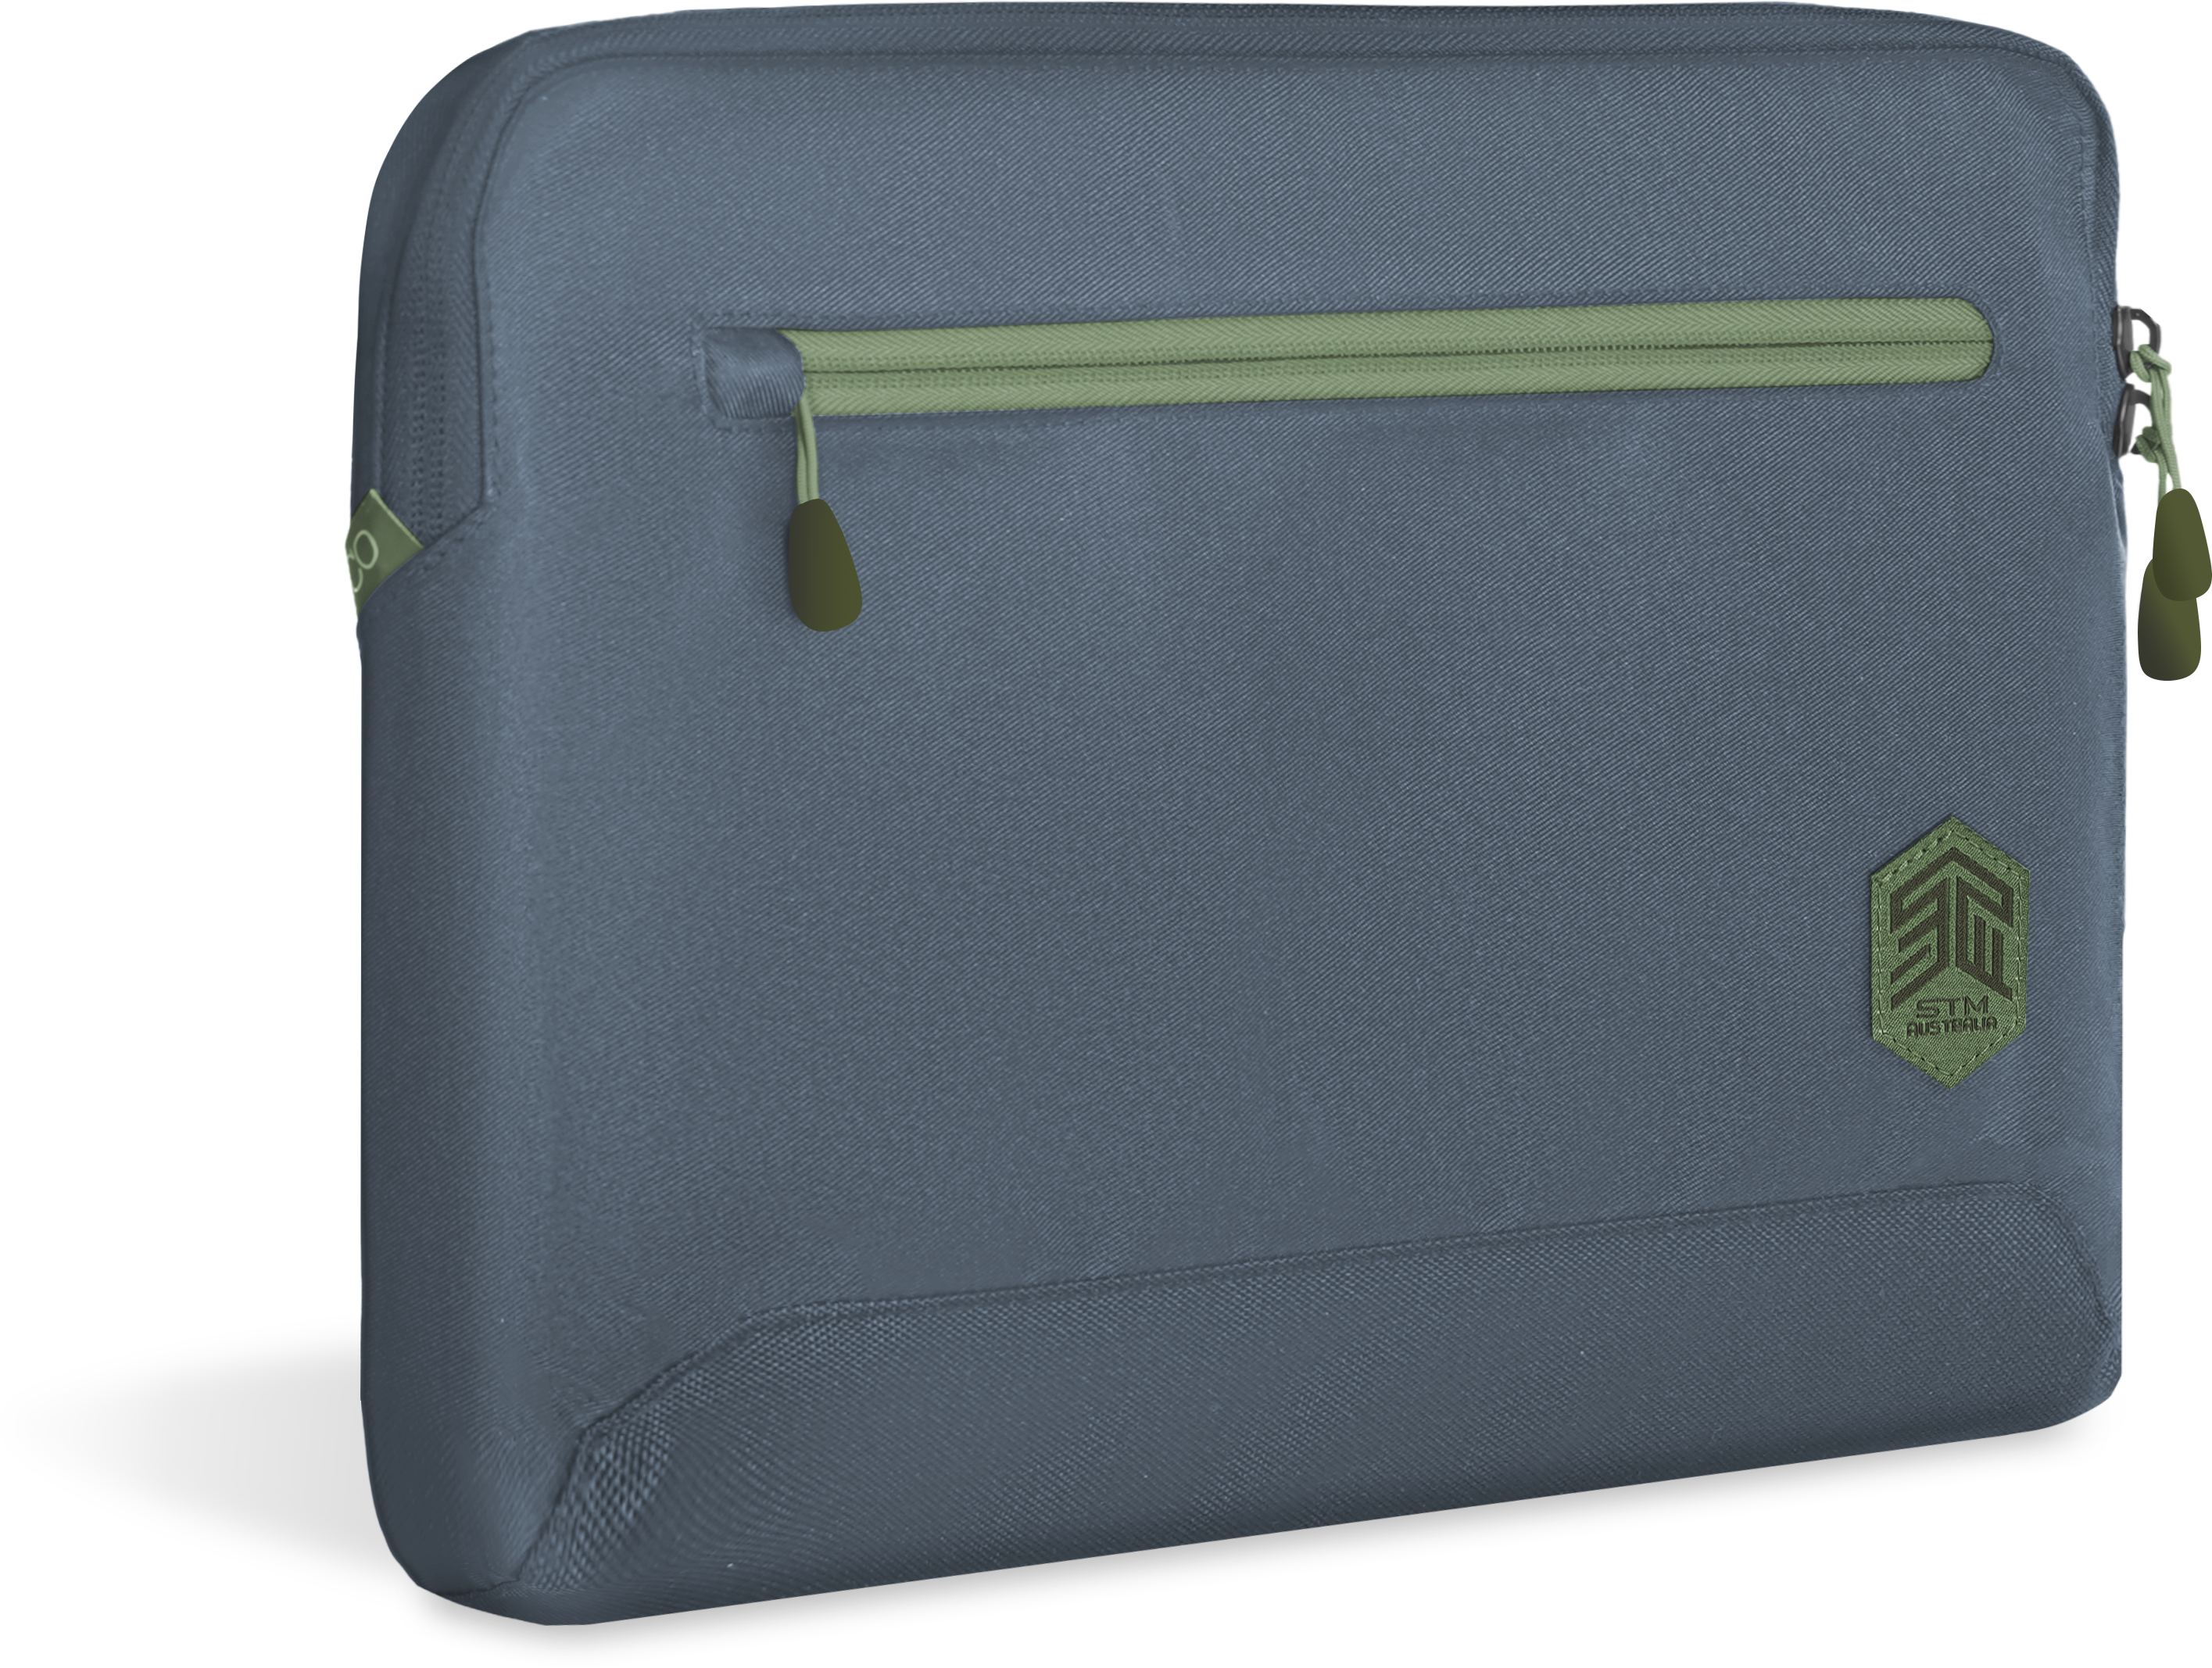 STM ECO Sleeve für Aktentasche Apple 100% Polyester, Blau recyceltes 300D Notebooktasche